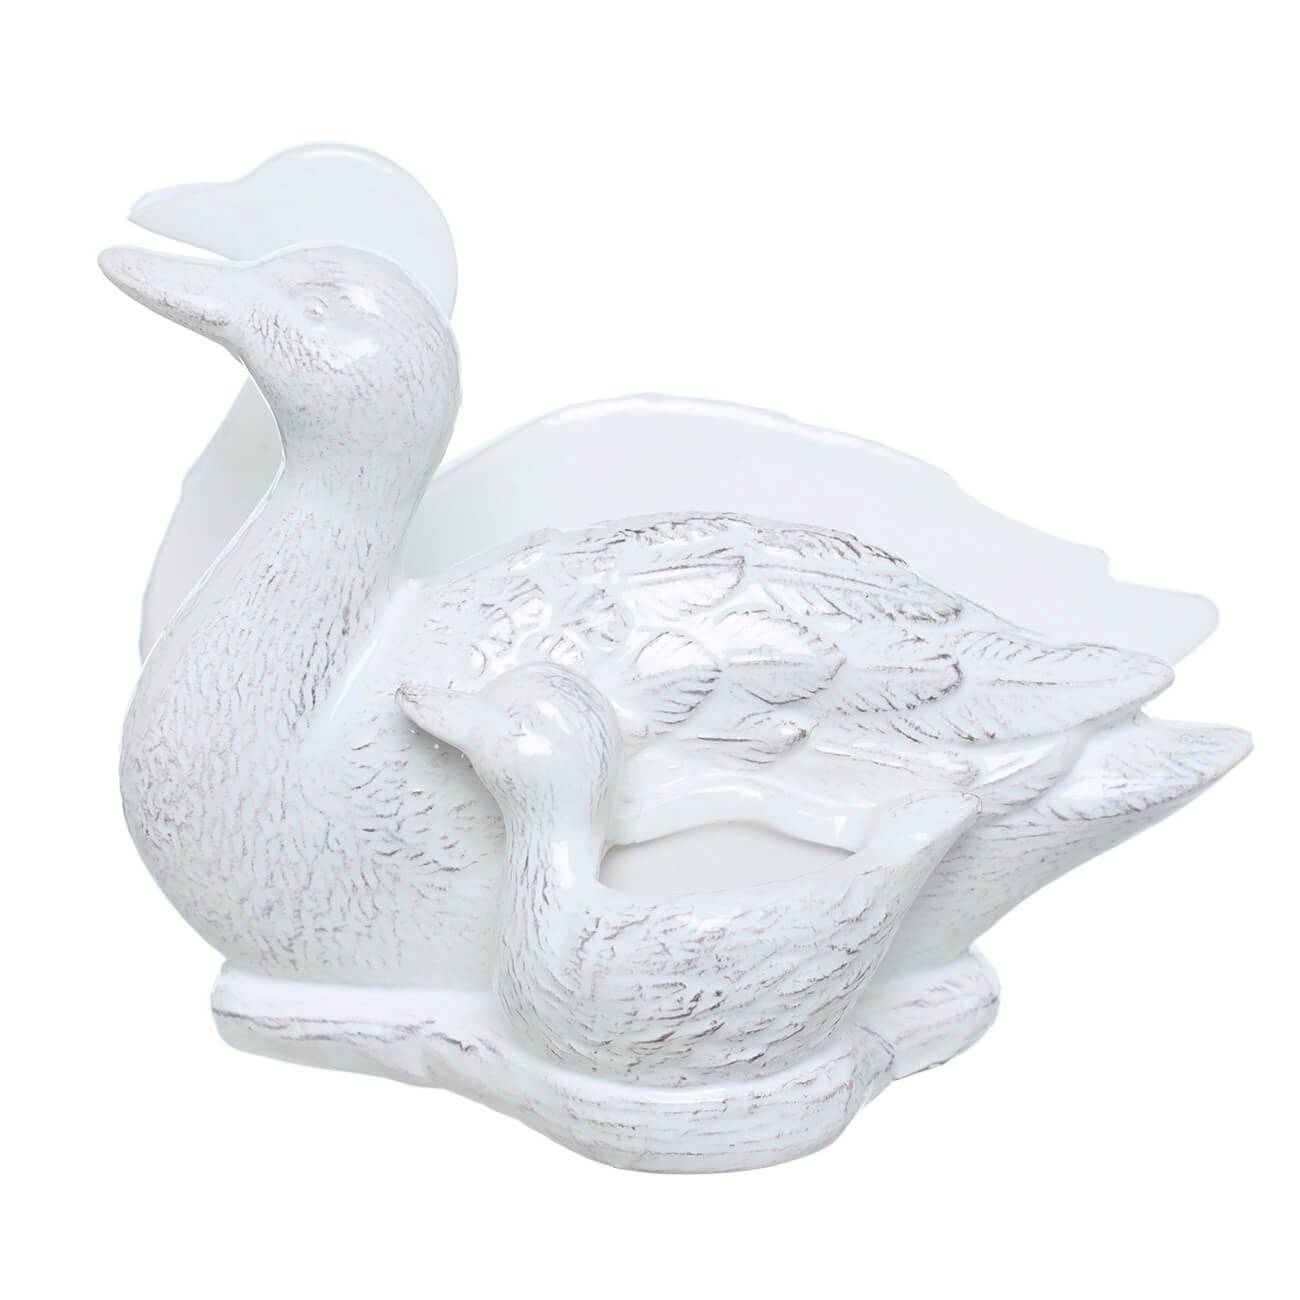 Салфетница, 15 см, с отделением для зубочисток, керамика, белая, Утка с утенком, Duck флюгер большой duck